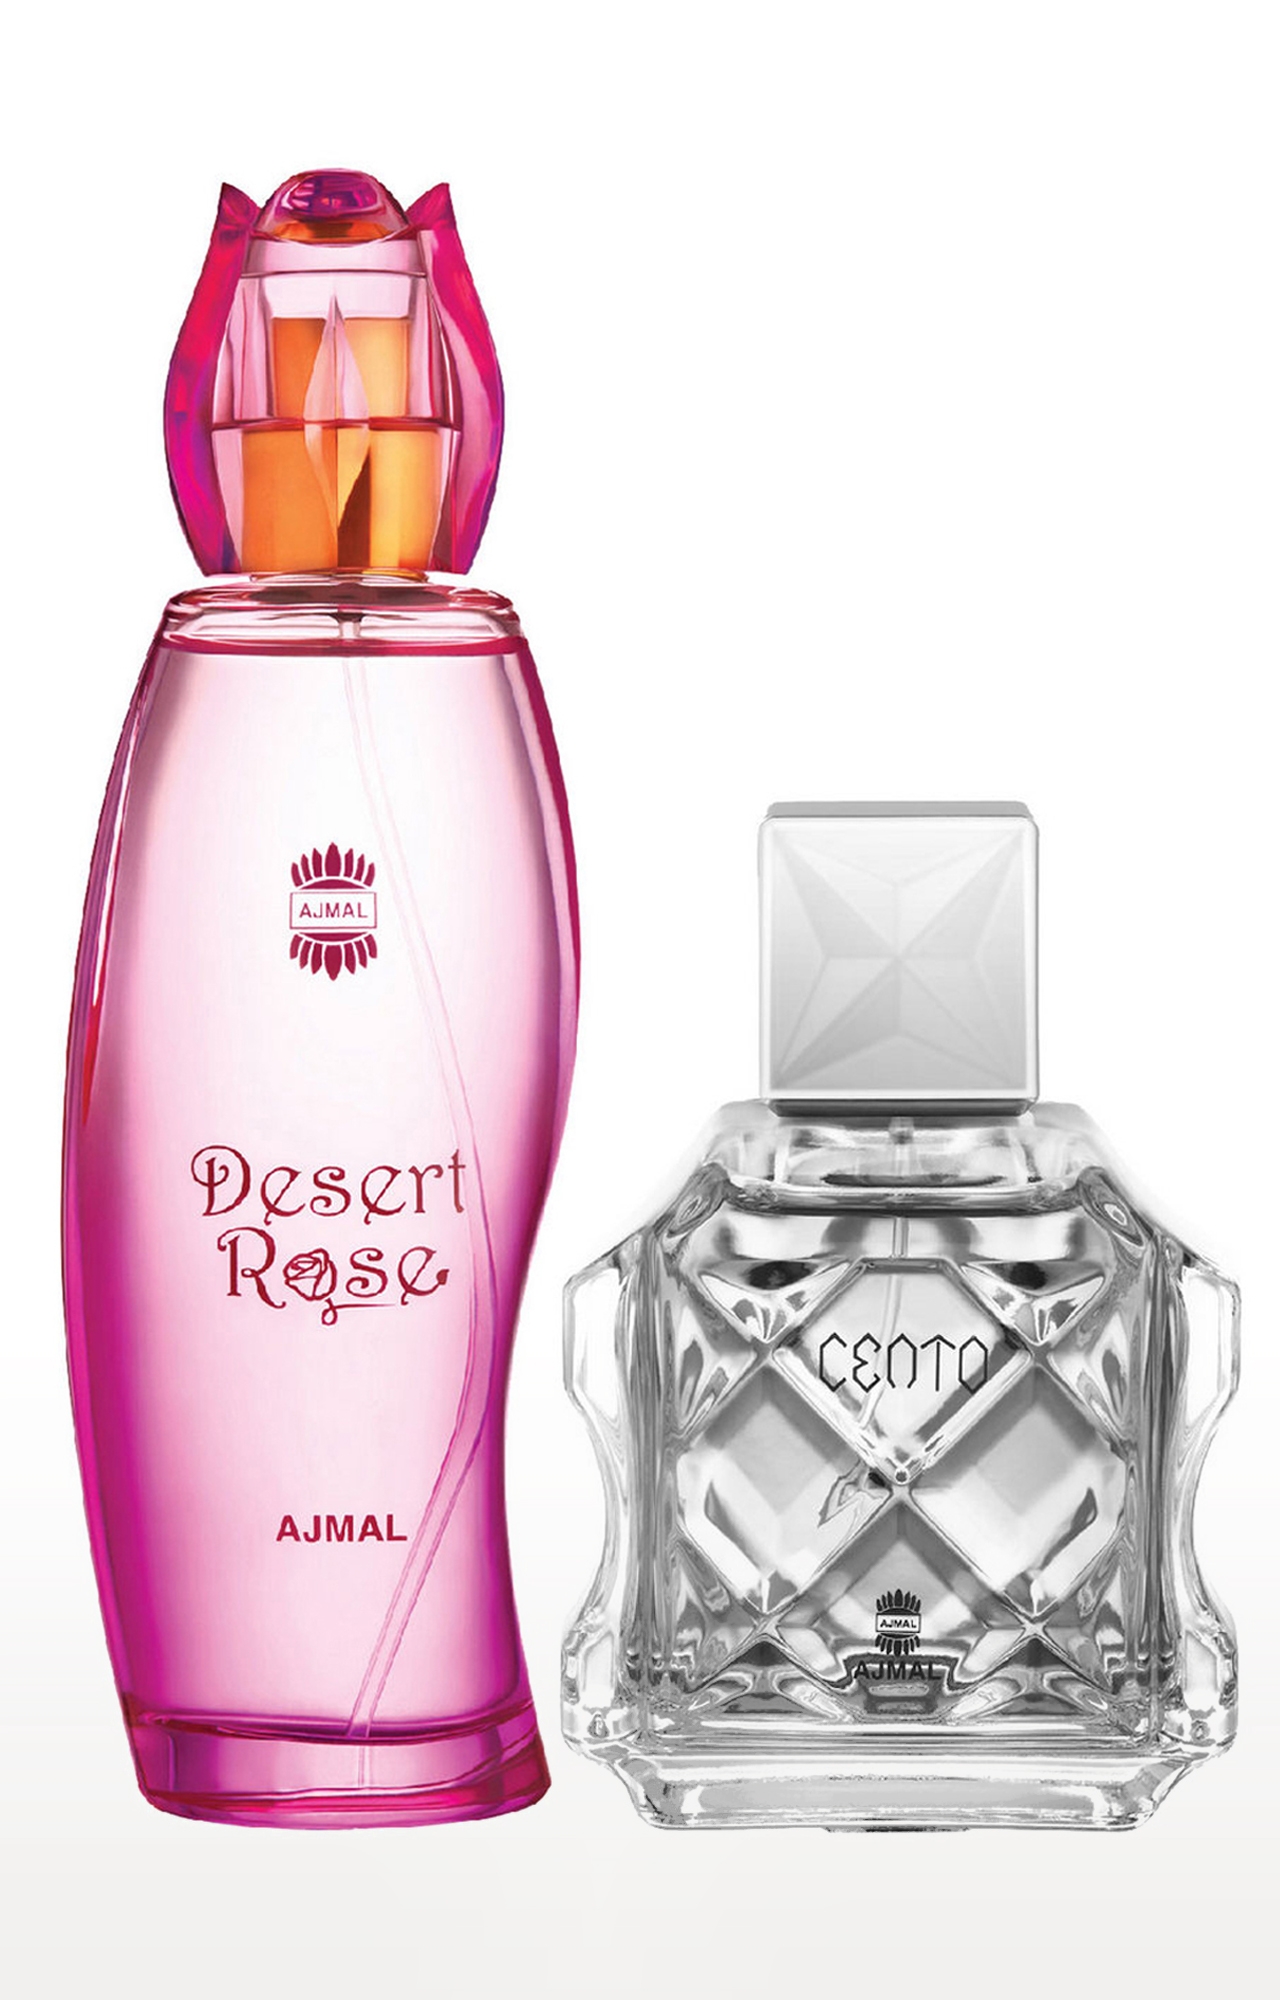 Ajmal Desert Rose EDP Oriental Perfume 100ml for Women and Cento EDP Perfume 100ml for Men